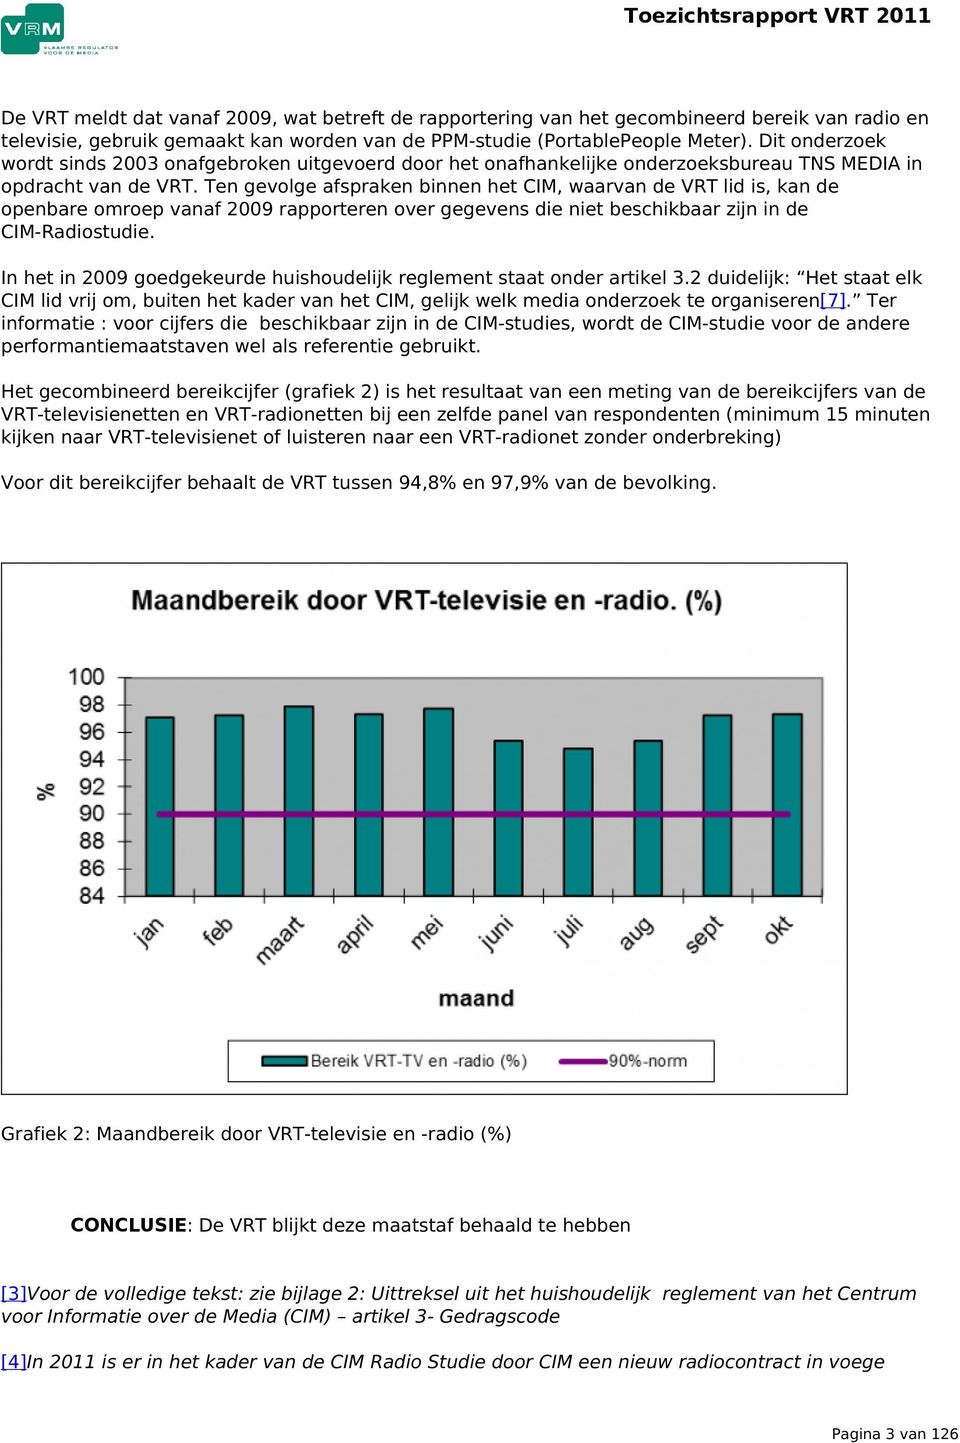 Ten gevolge afspraken binnen het CIM, waarvan de VRT lid is, kan de openbare omroep vanaf 2009 rapporteren over gegevens die niet beschikbaar zijn in de CIM-Radiostudie.